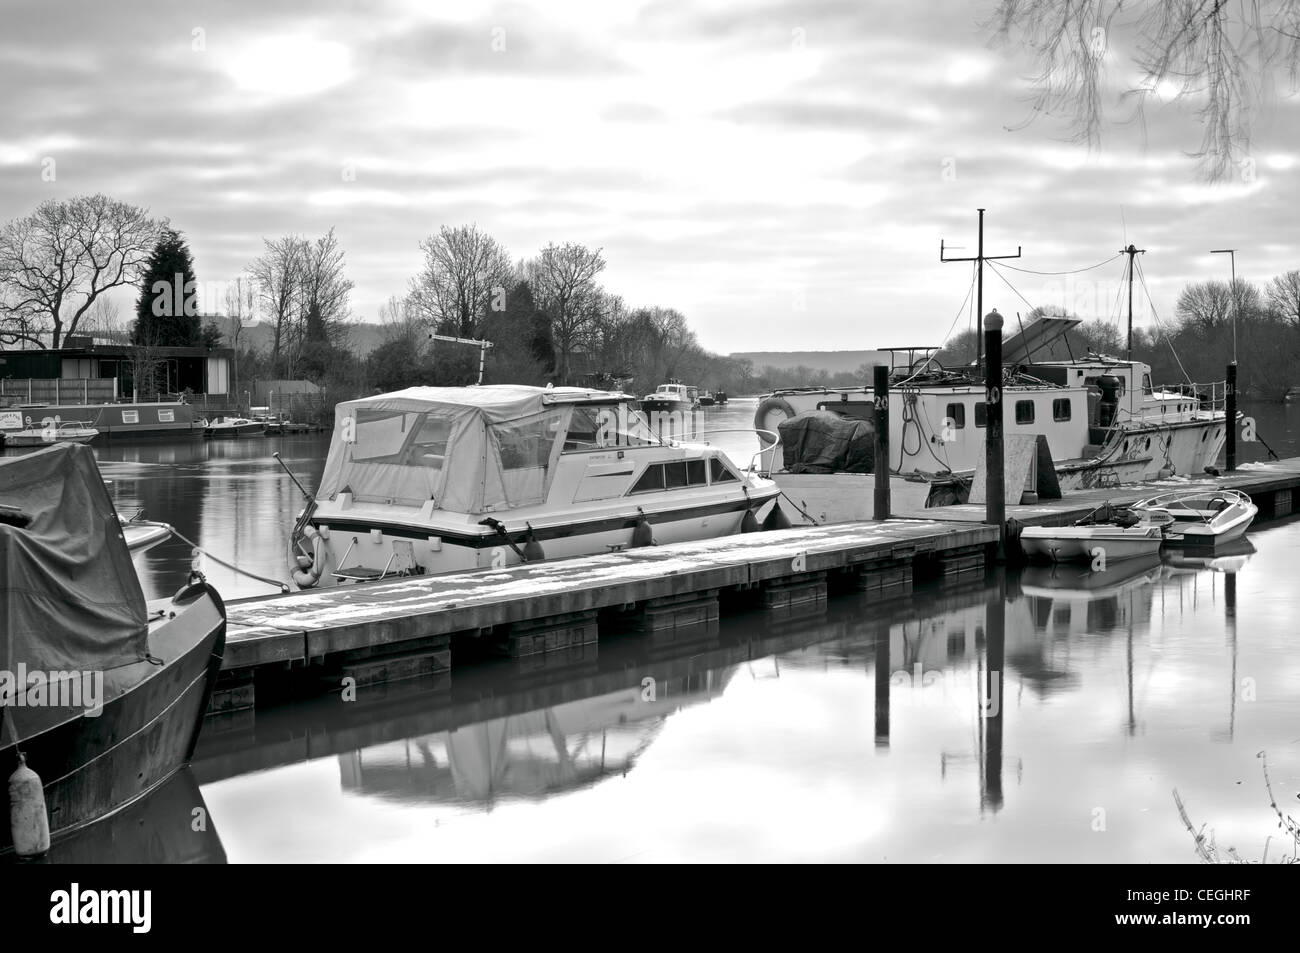 Trent river scenes Stock Photo - Alamy